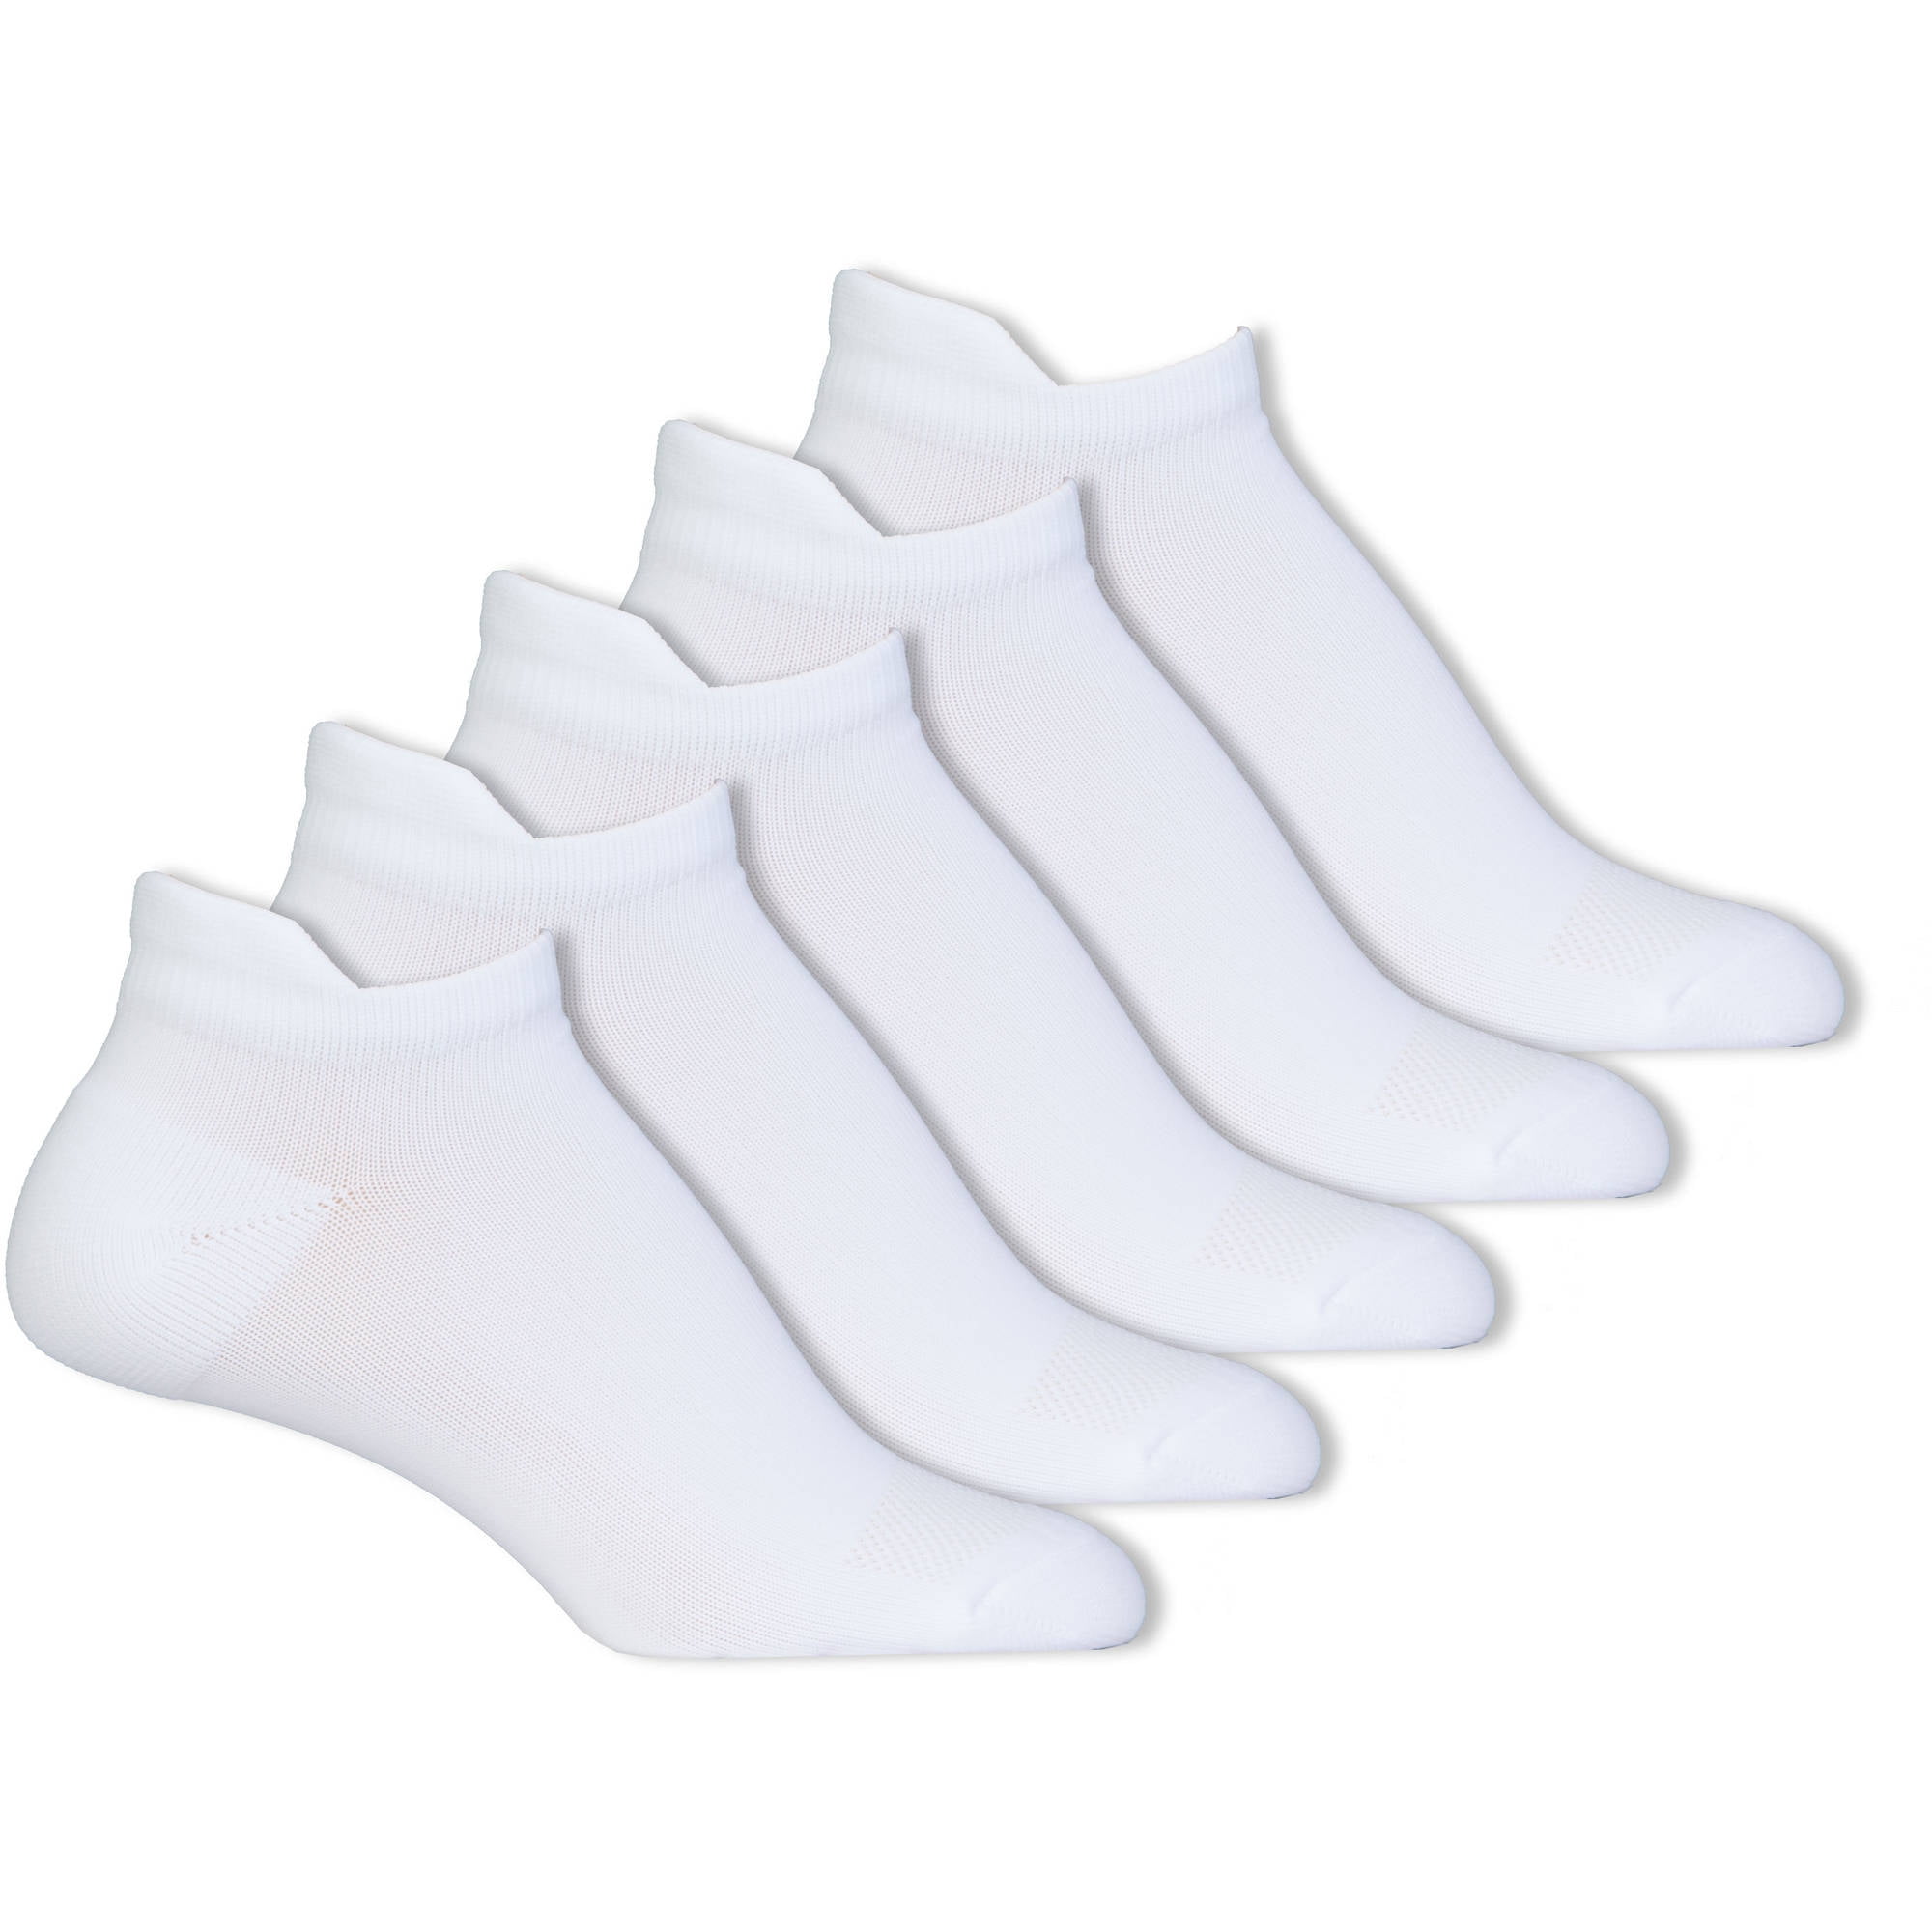 Danskin - Ultra Comfort Noshow Socks 